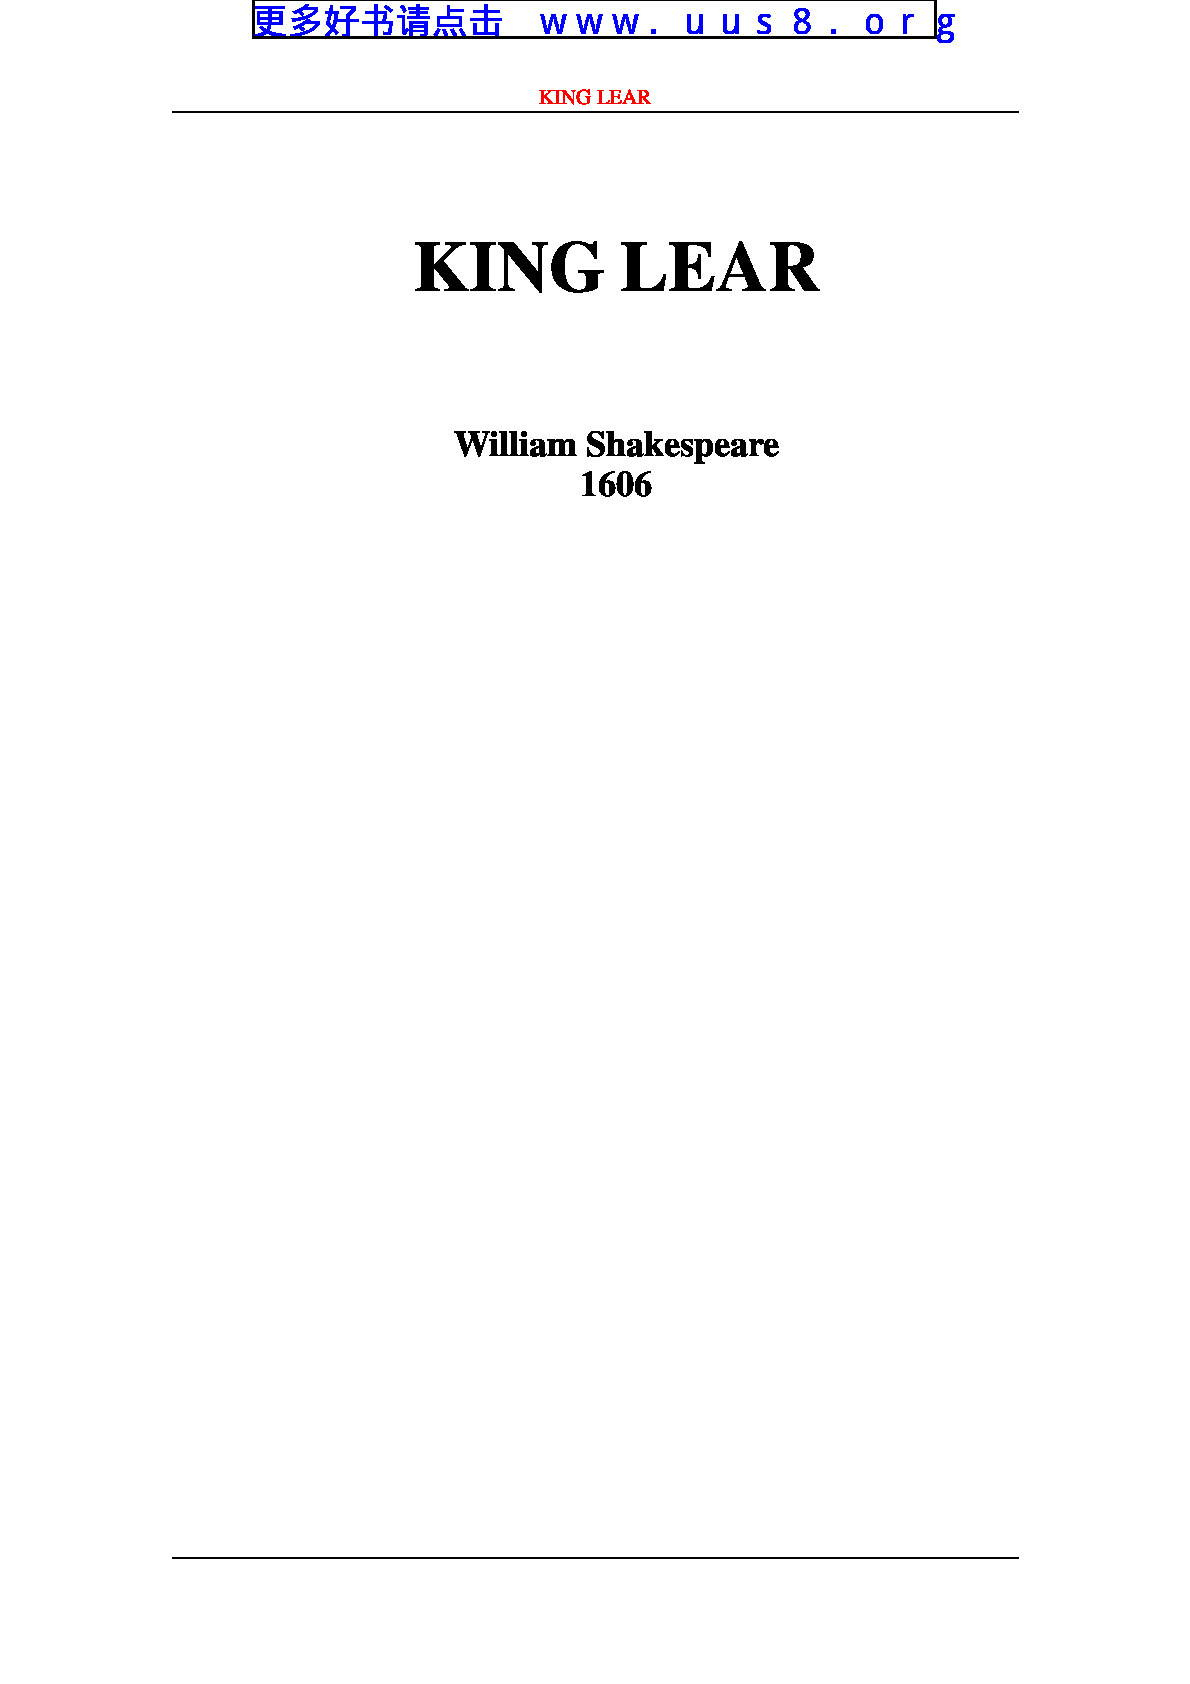 King_Lear(李尔王)